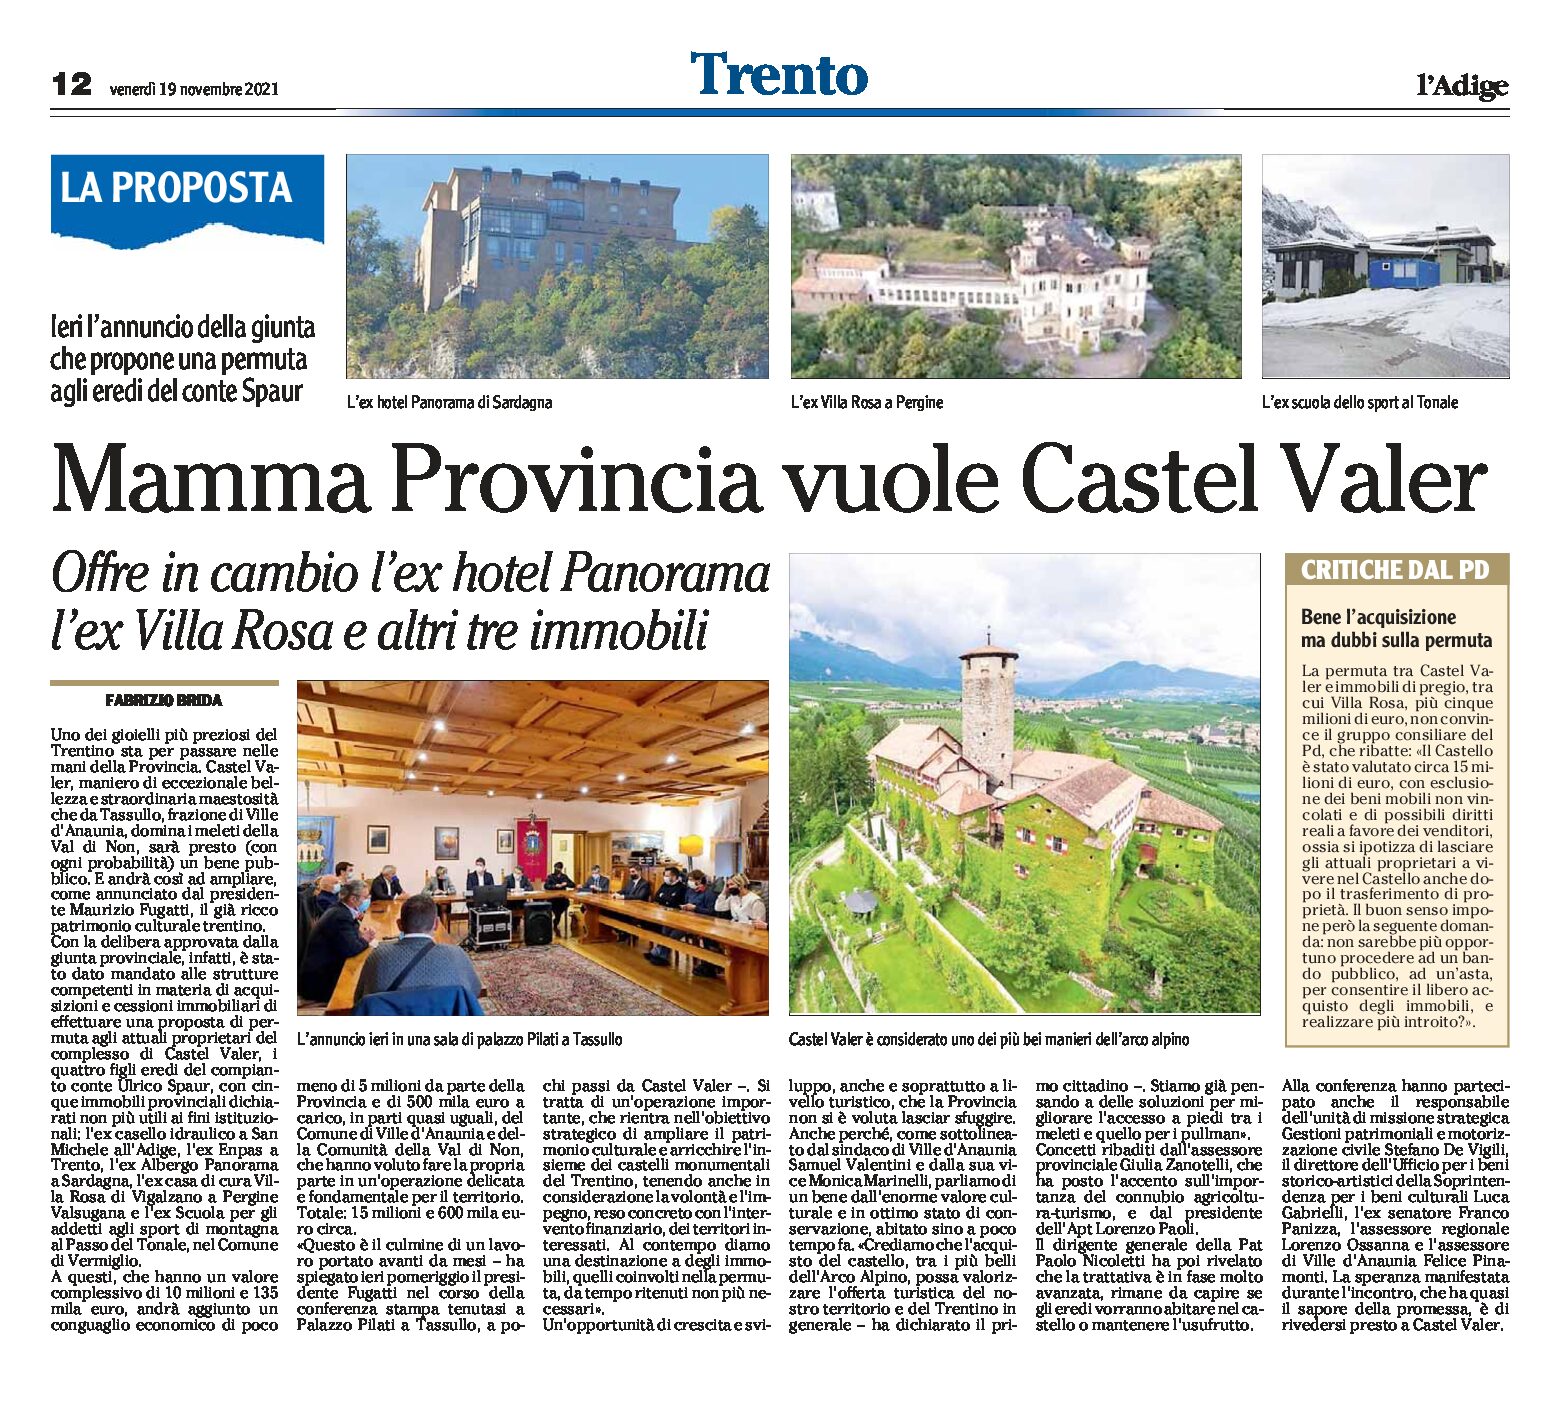 La provincia vuole Castel Valer. Offre in cambio l’ex hotel Panorama, l’ex Villa Rosa e altri tre immobili